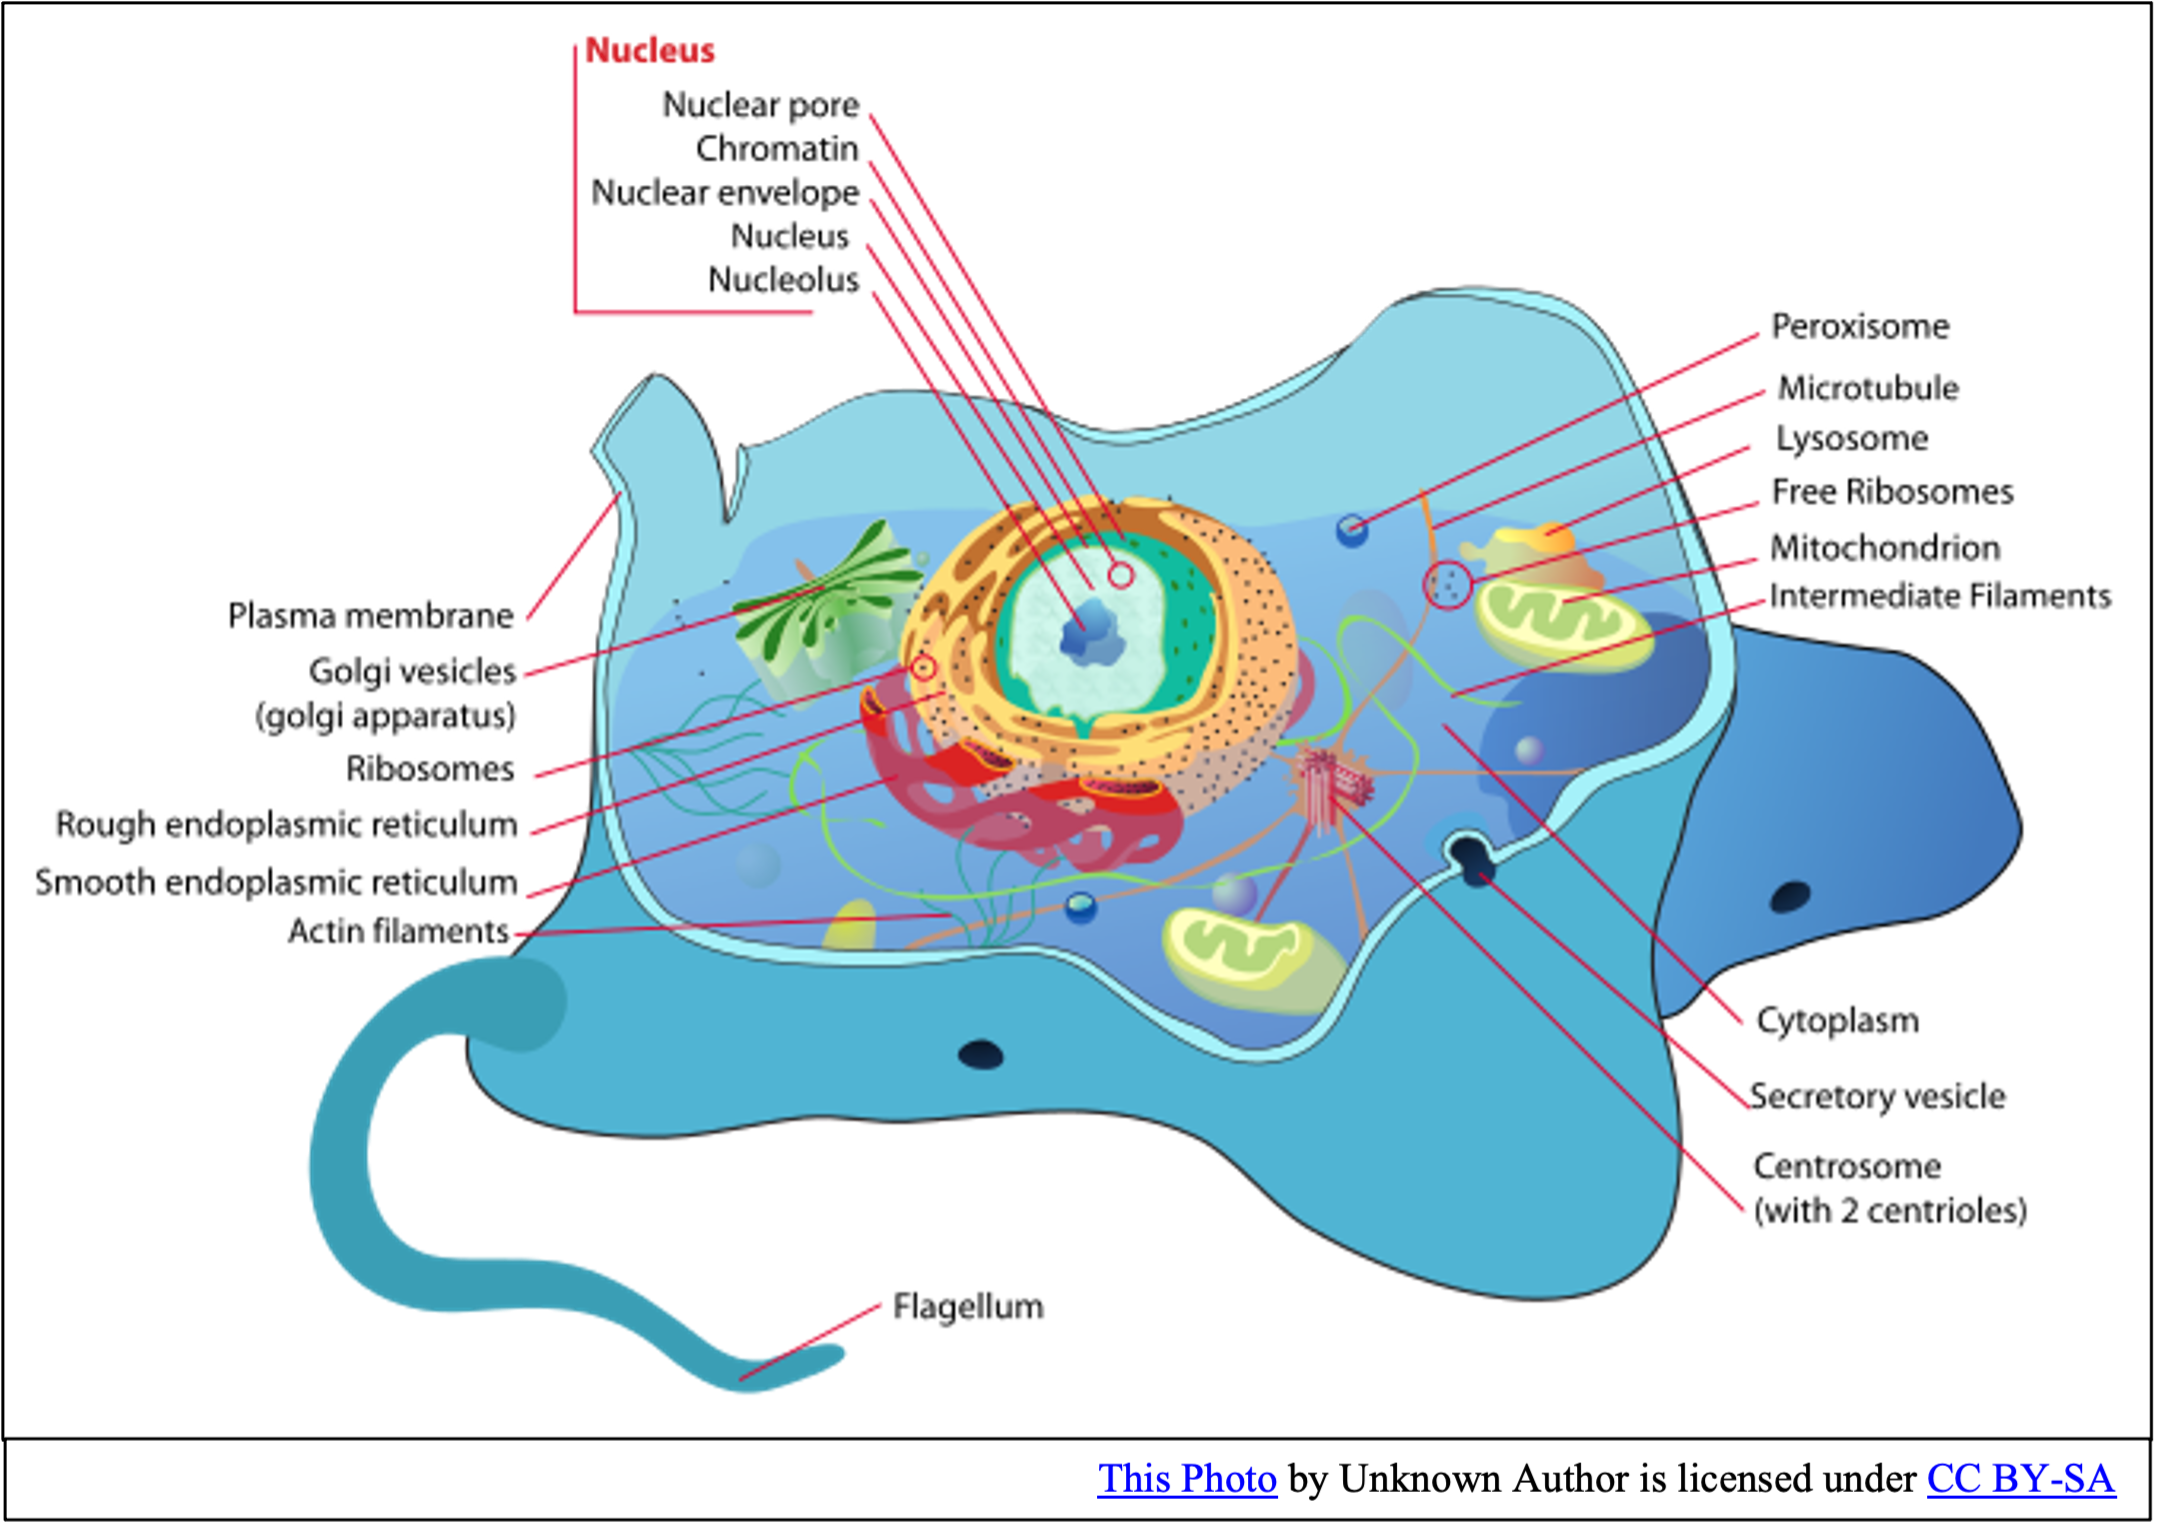 الخلية هي اصغر وحدة في بناء جسم المخلوقات الحية